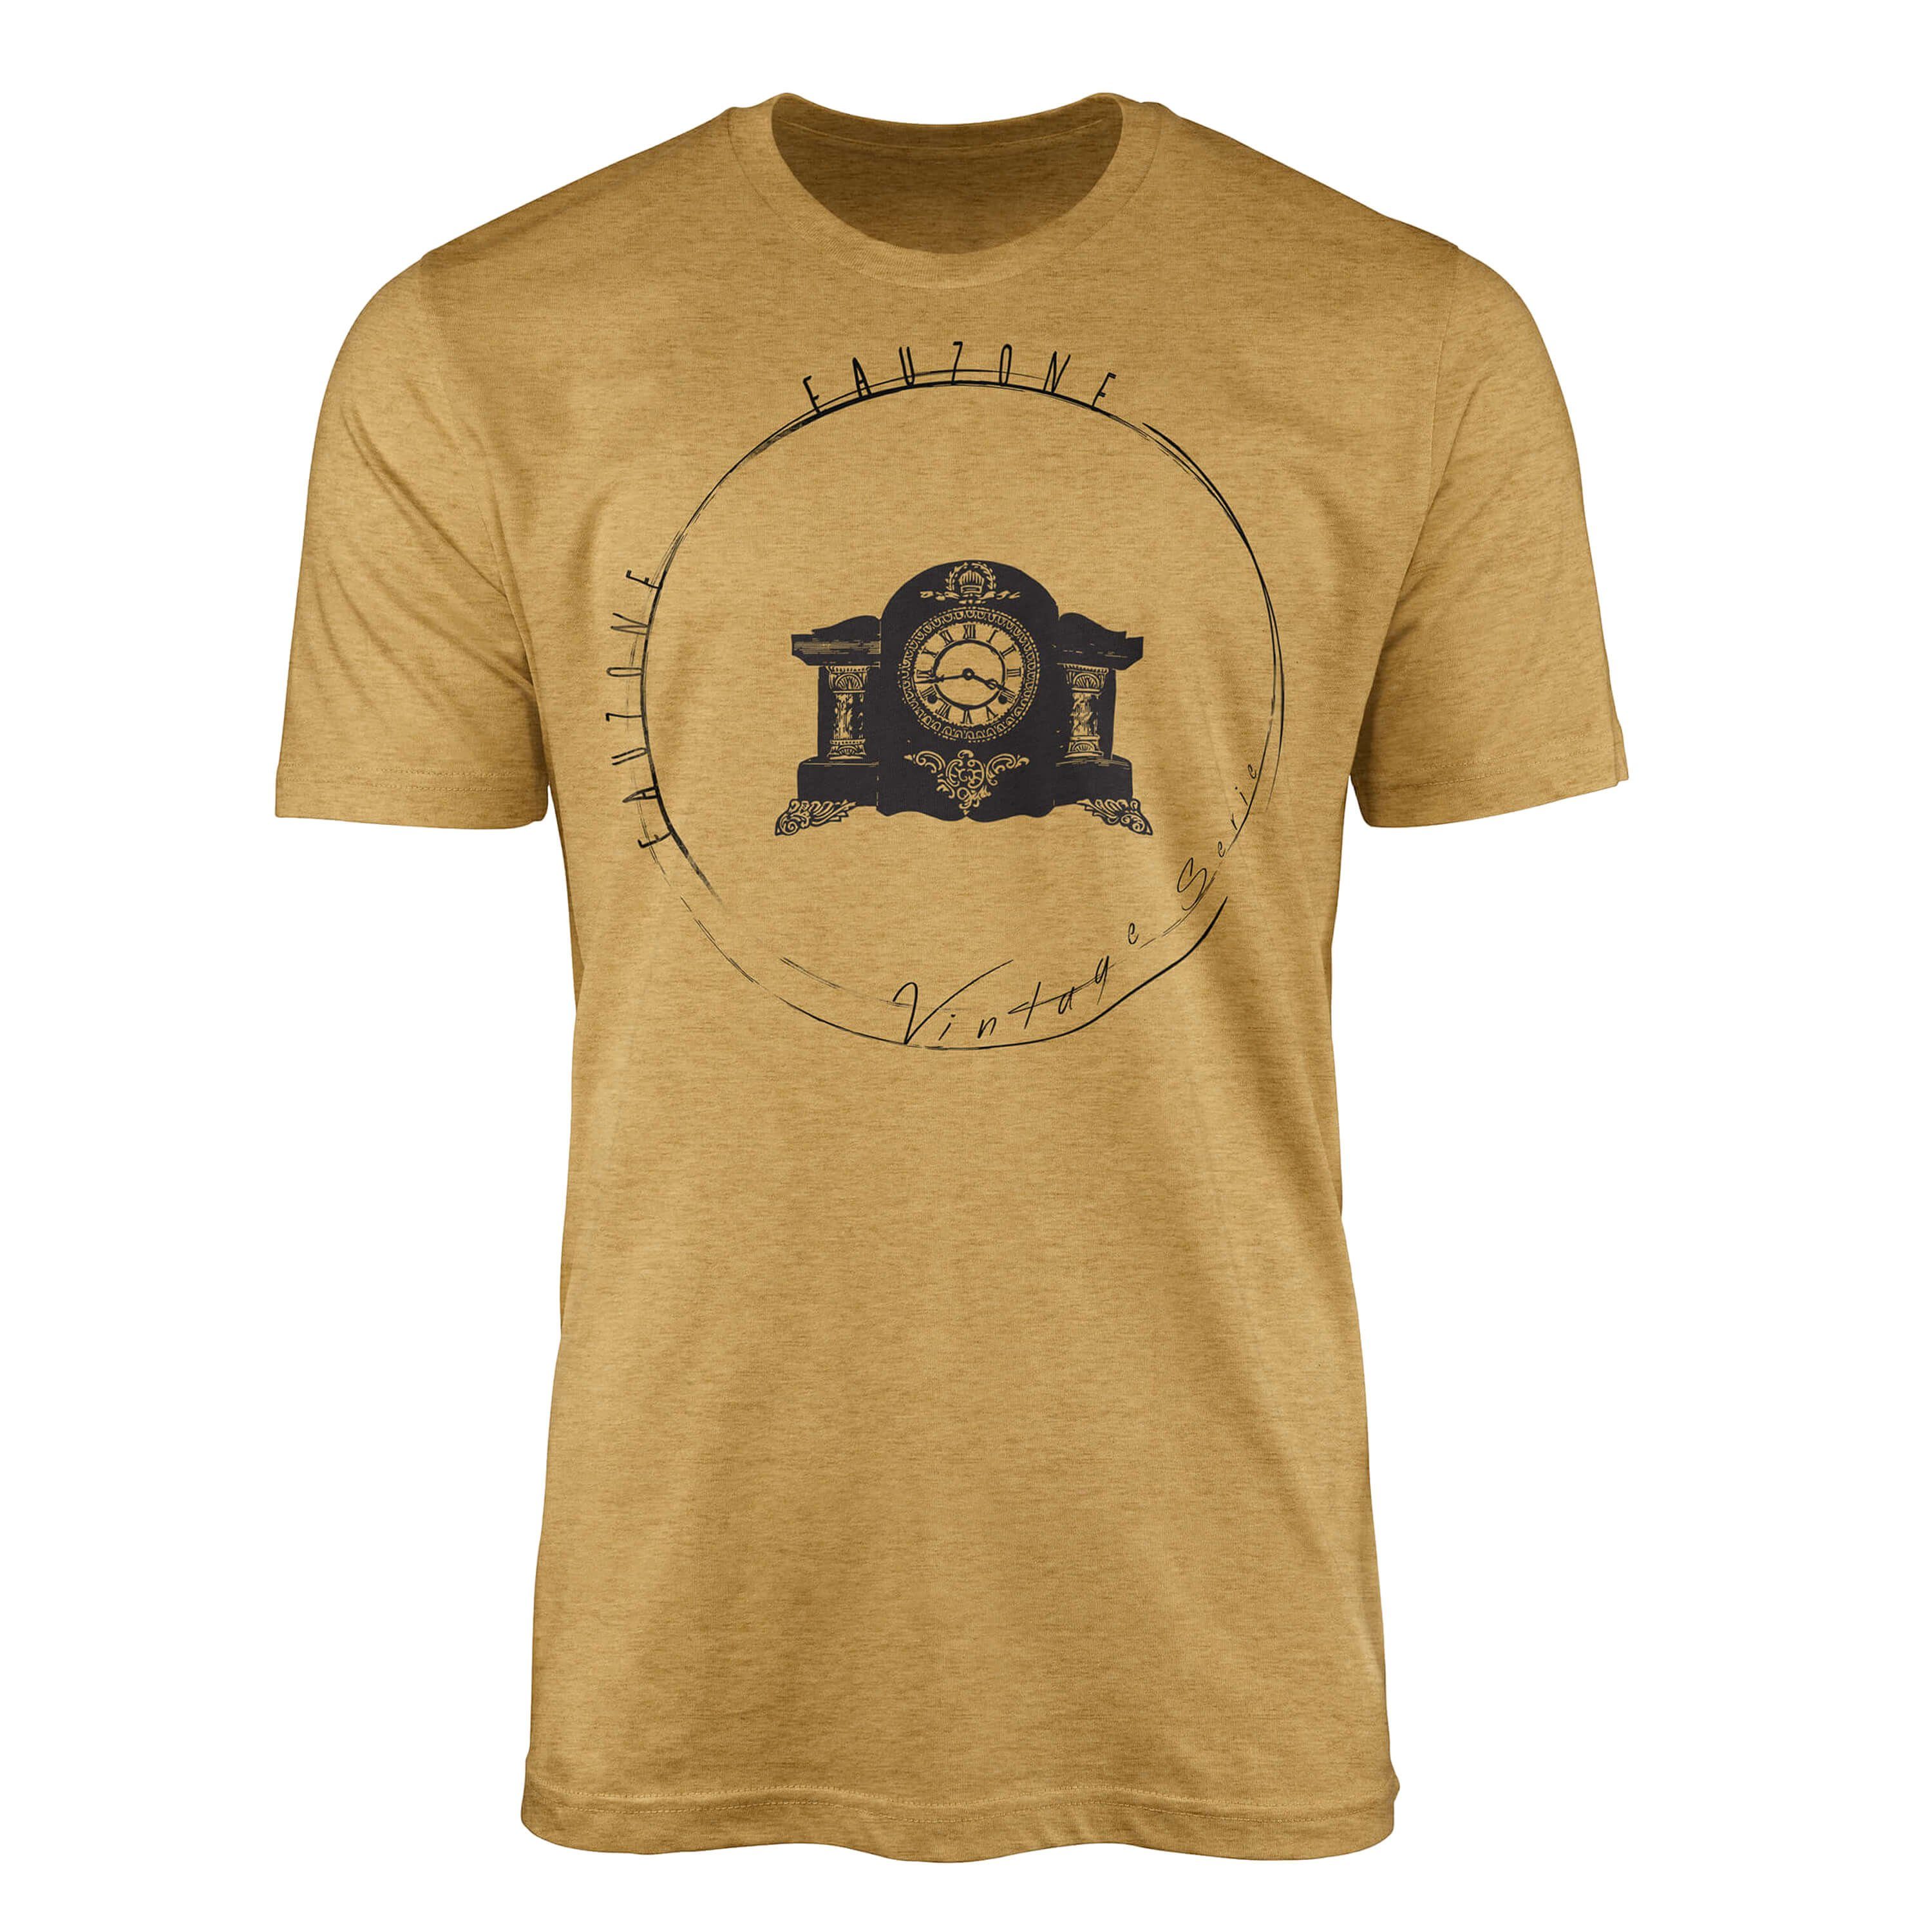 Sinus Art T-Shirt Vintage Herren Kaminuhr T-Shirt Antique Gold